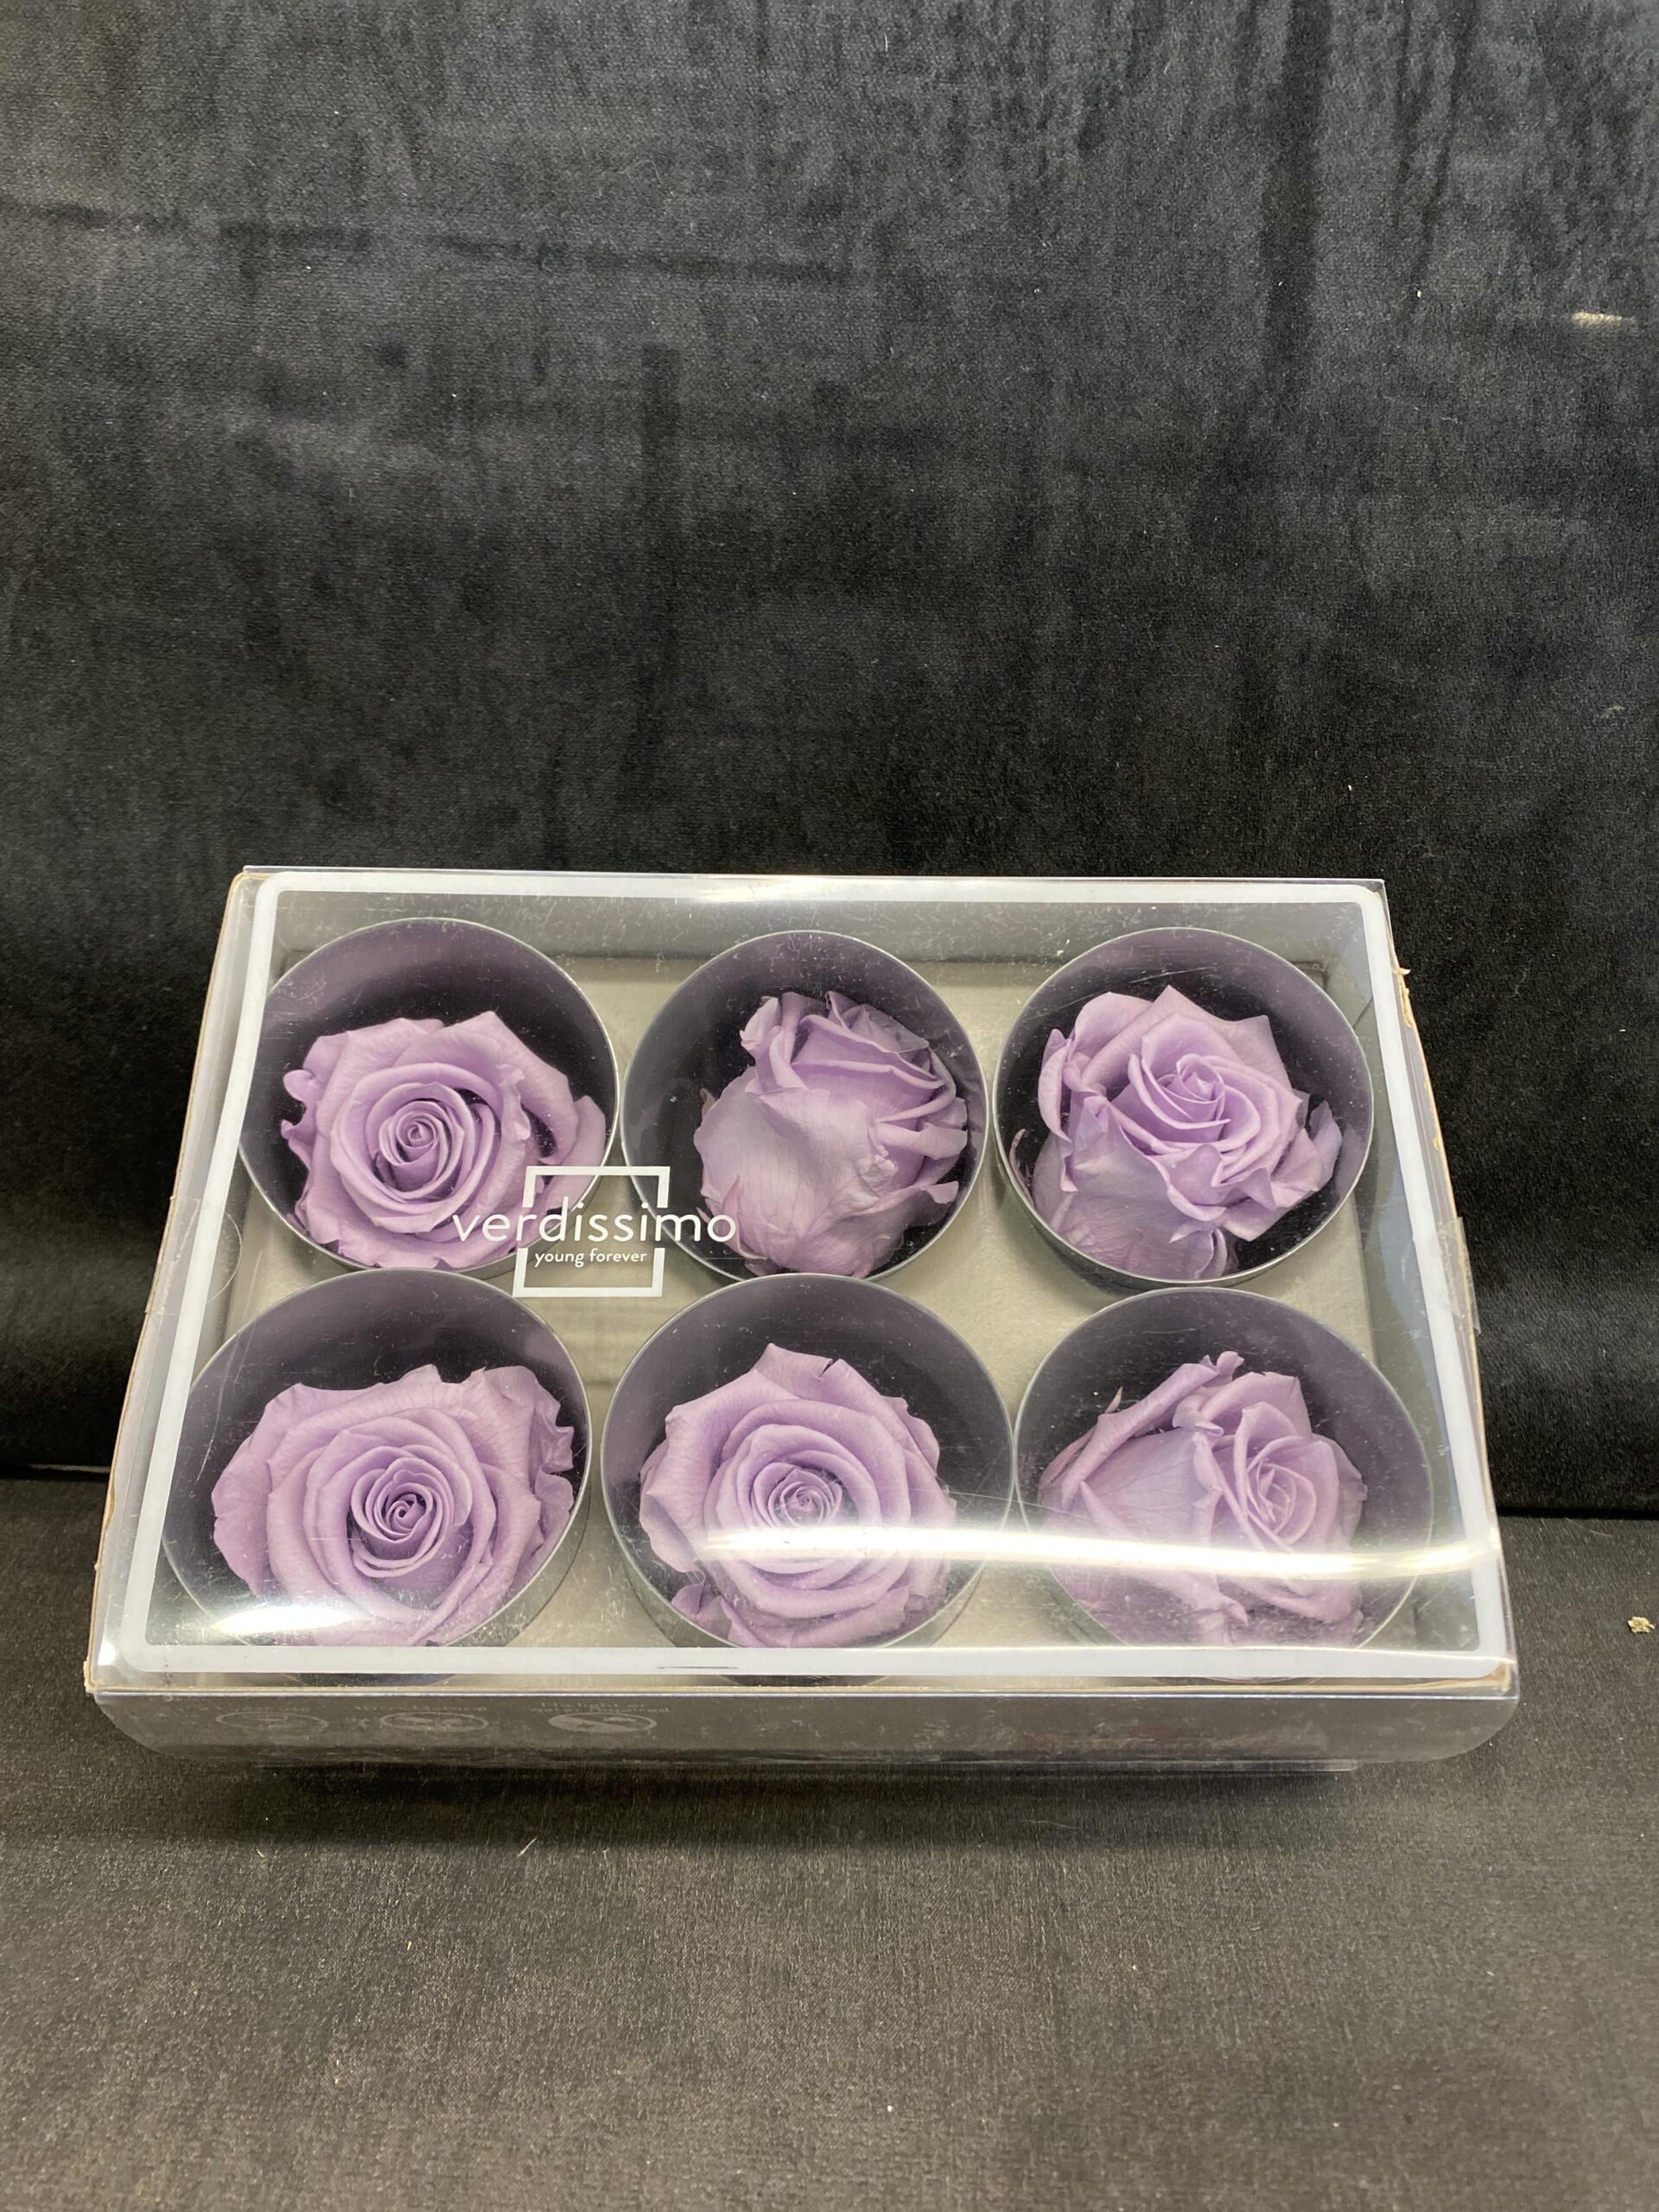 Box of 6 Verdissimo Preserved Flowers – Rose